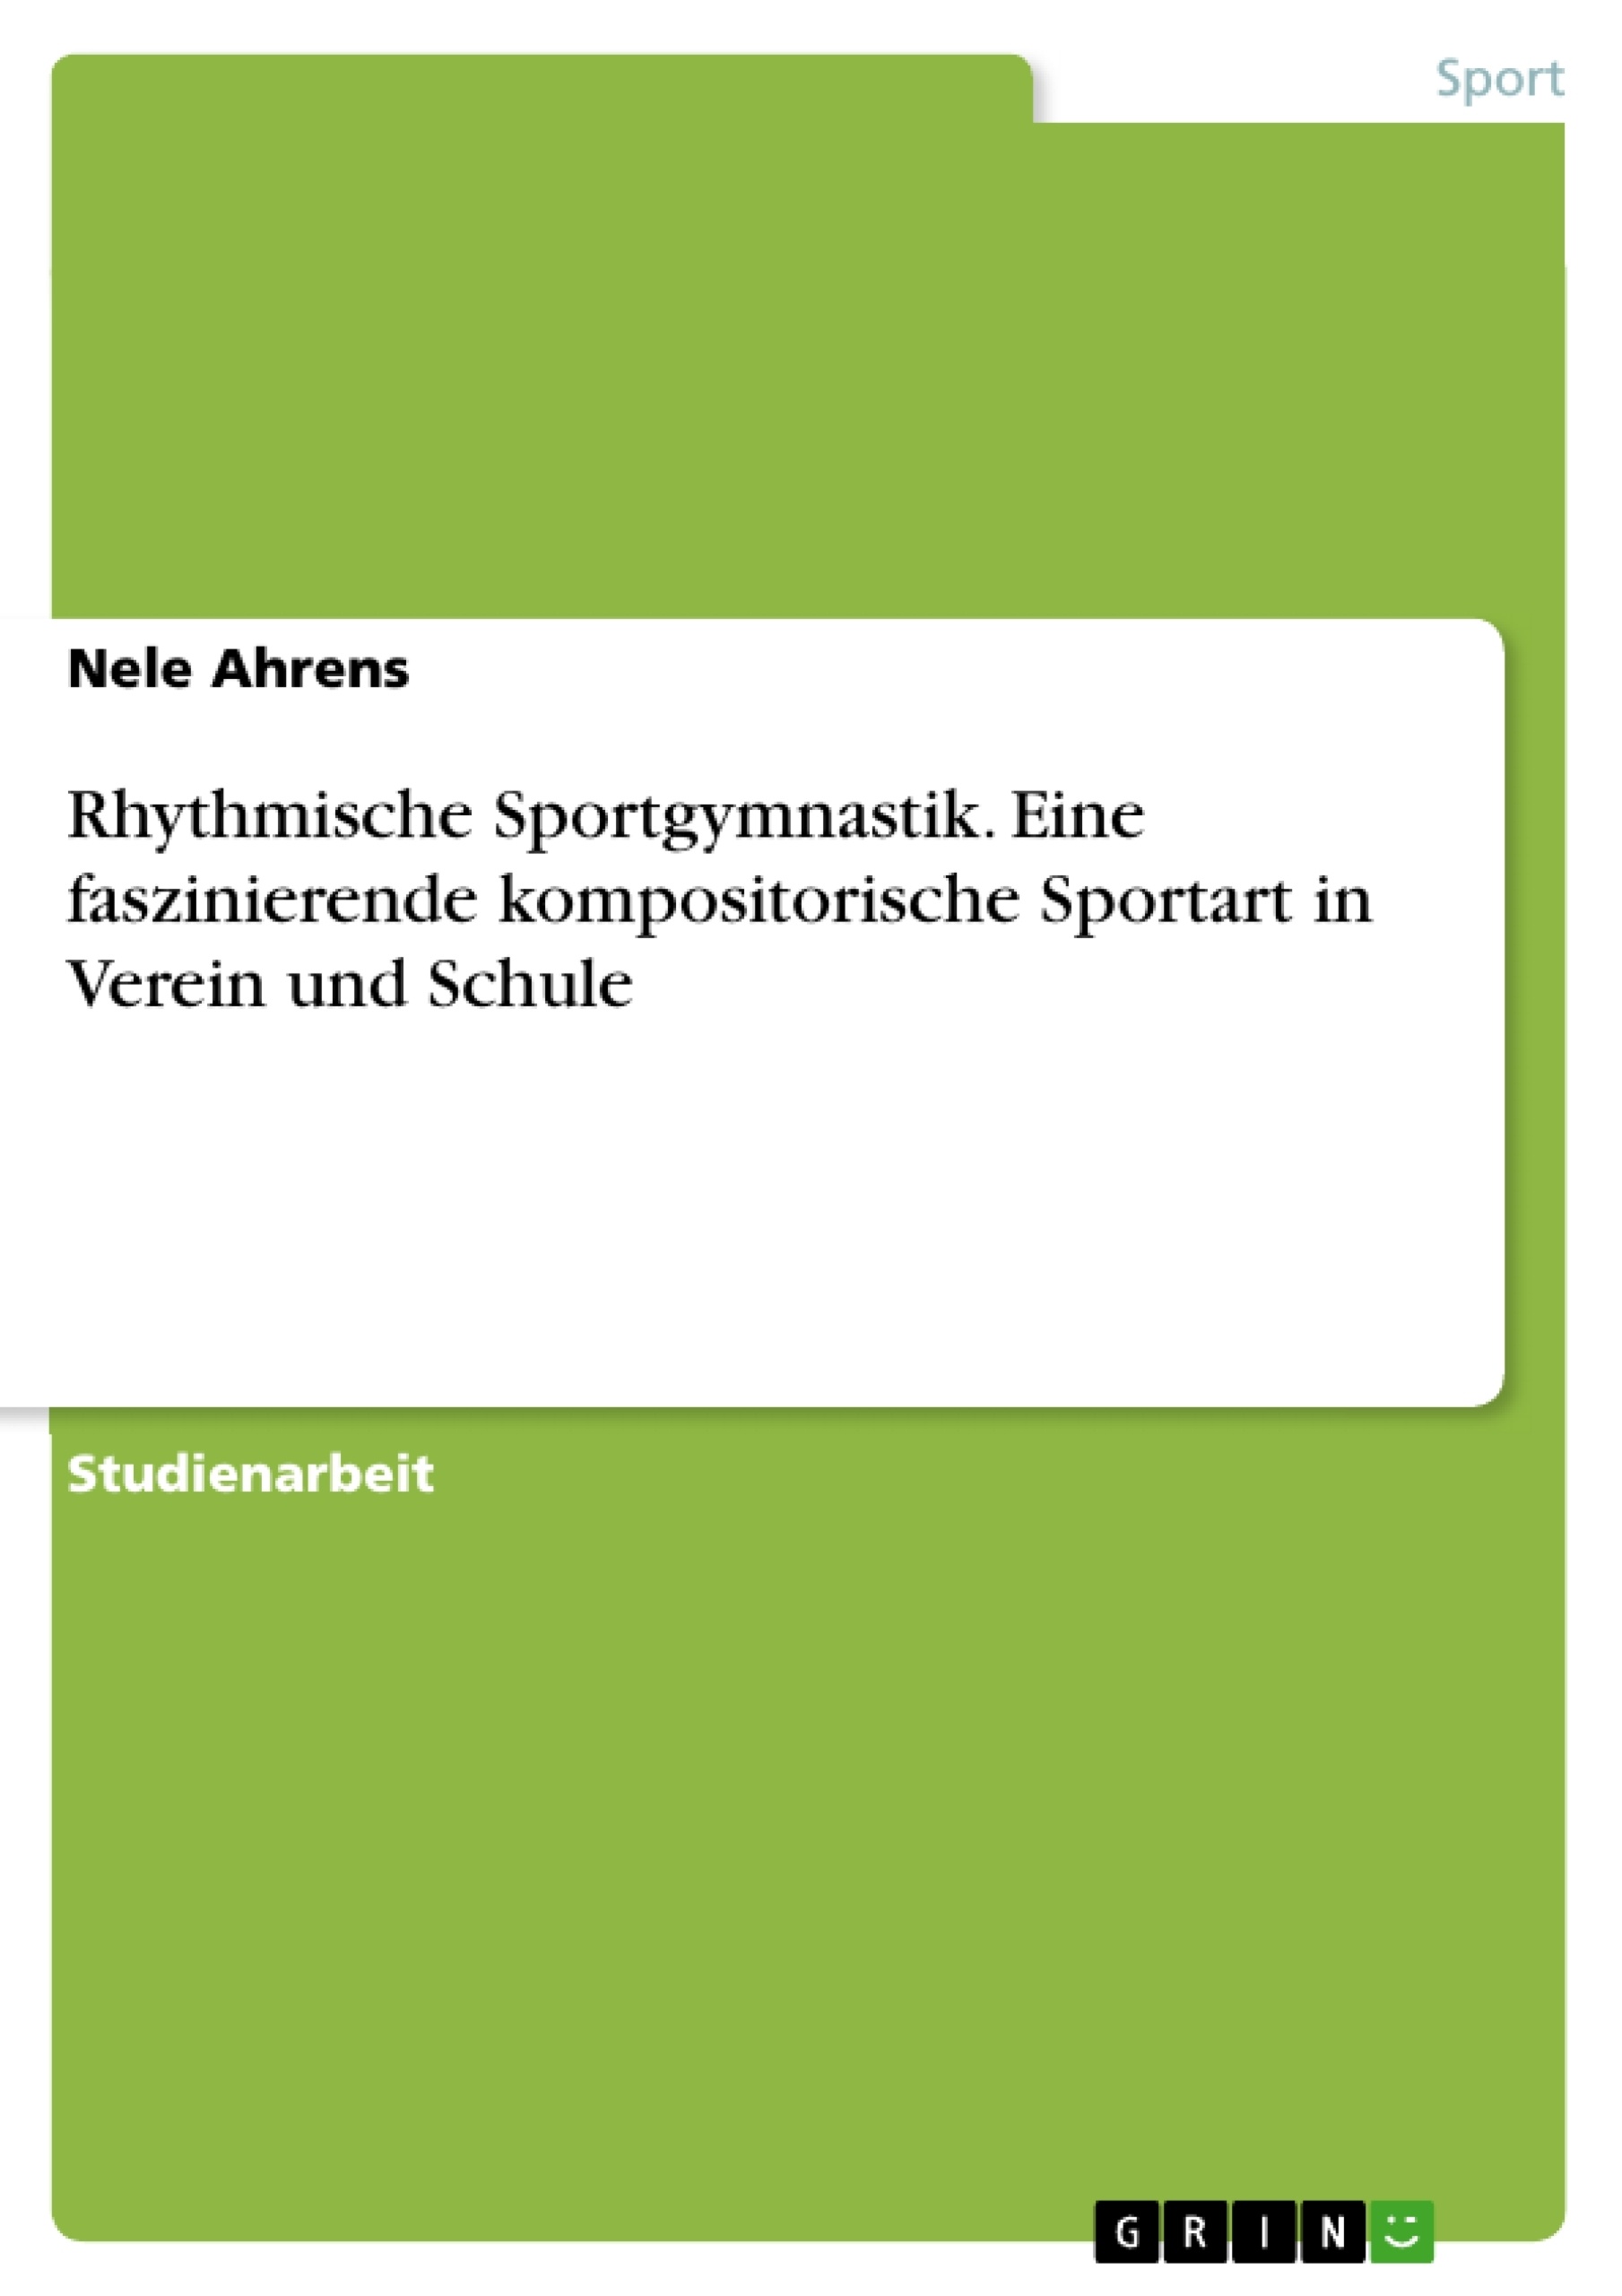 Title: Rhythmische Sportgymnastik. Eine faszinierende kompositorische Sportart in Verein und Schule